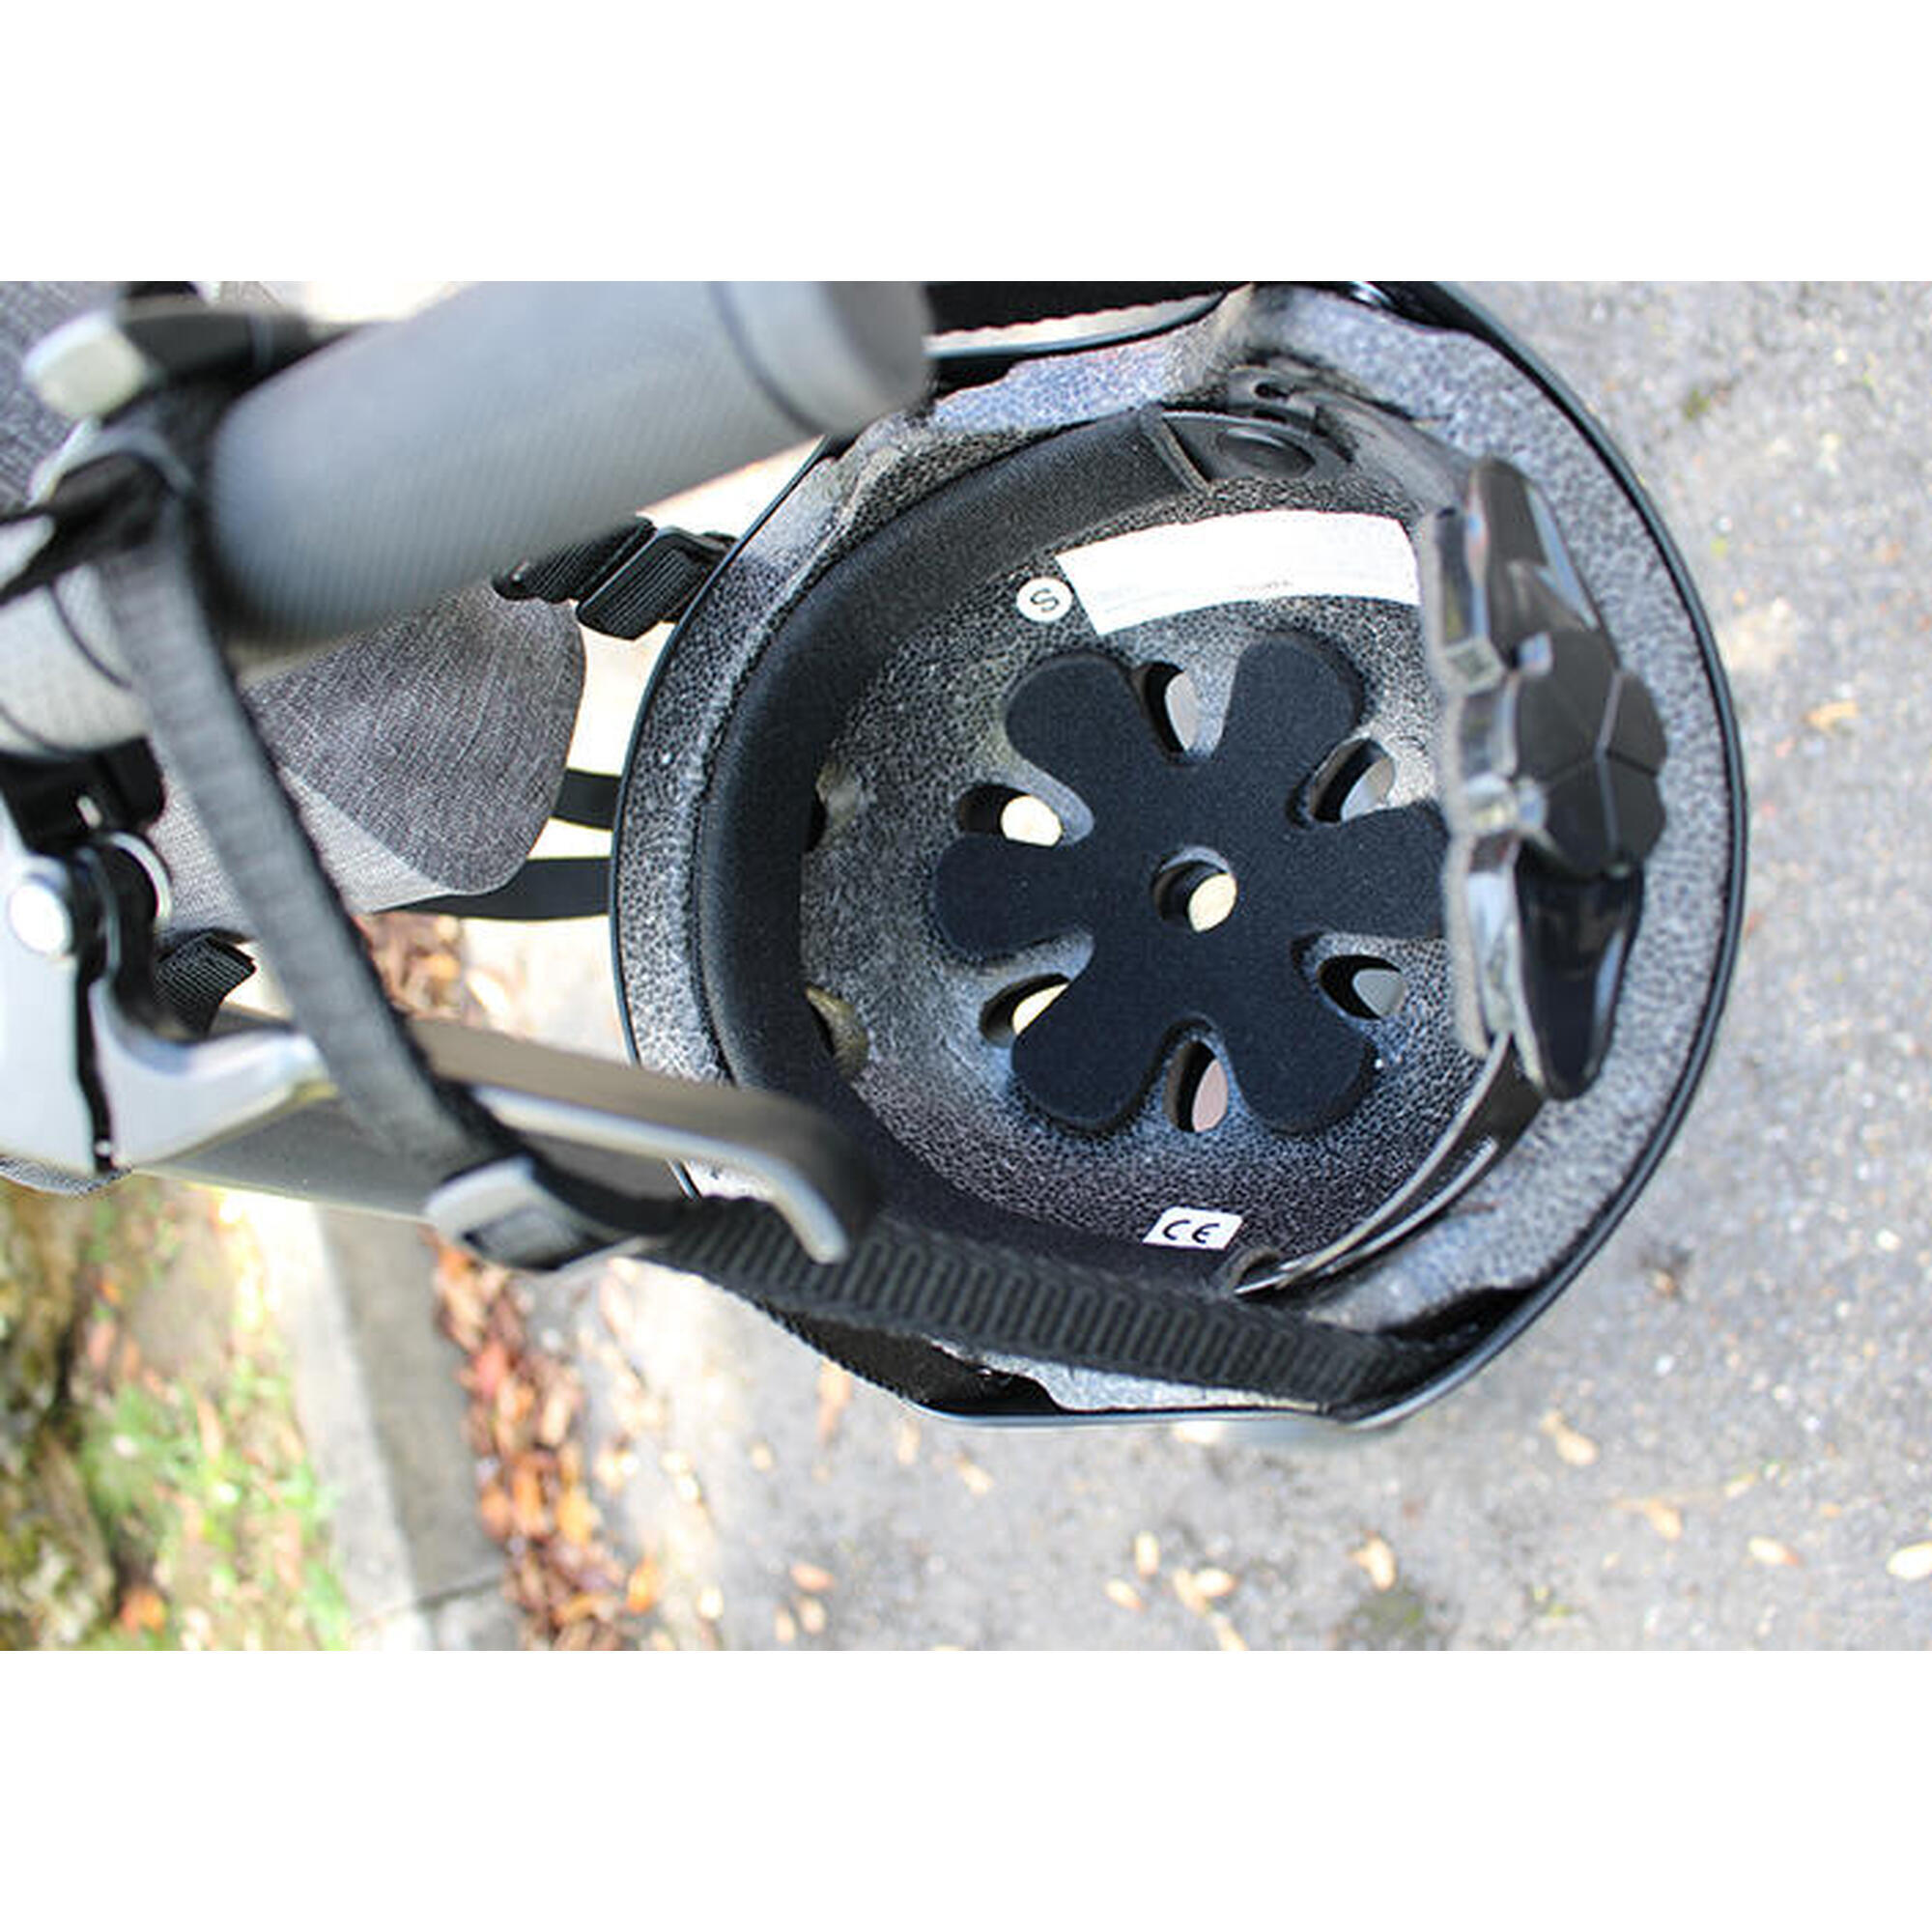 Yeep.me H.10 Vision zwarte helm voor scooter, fiets